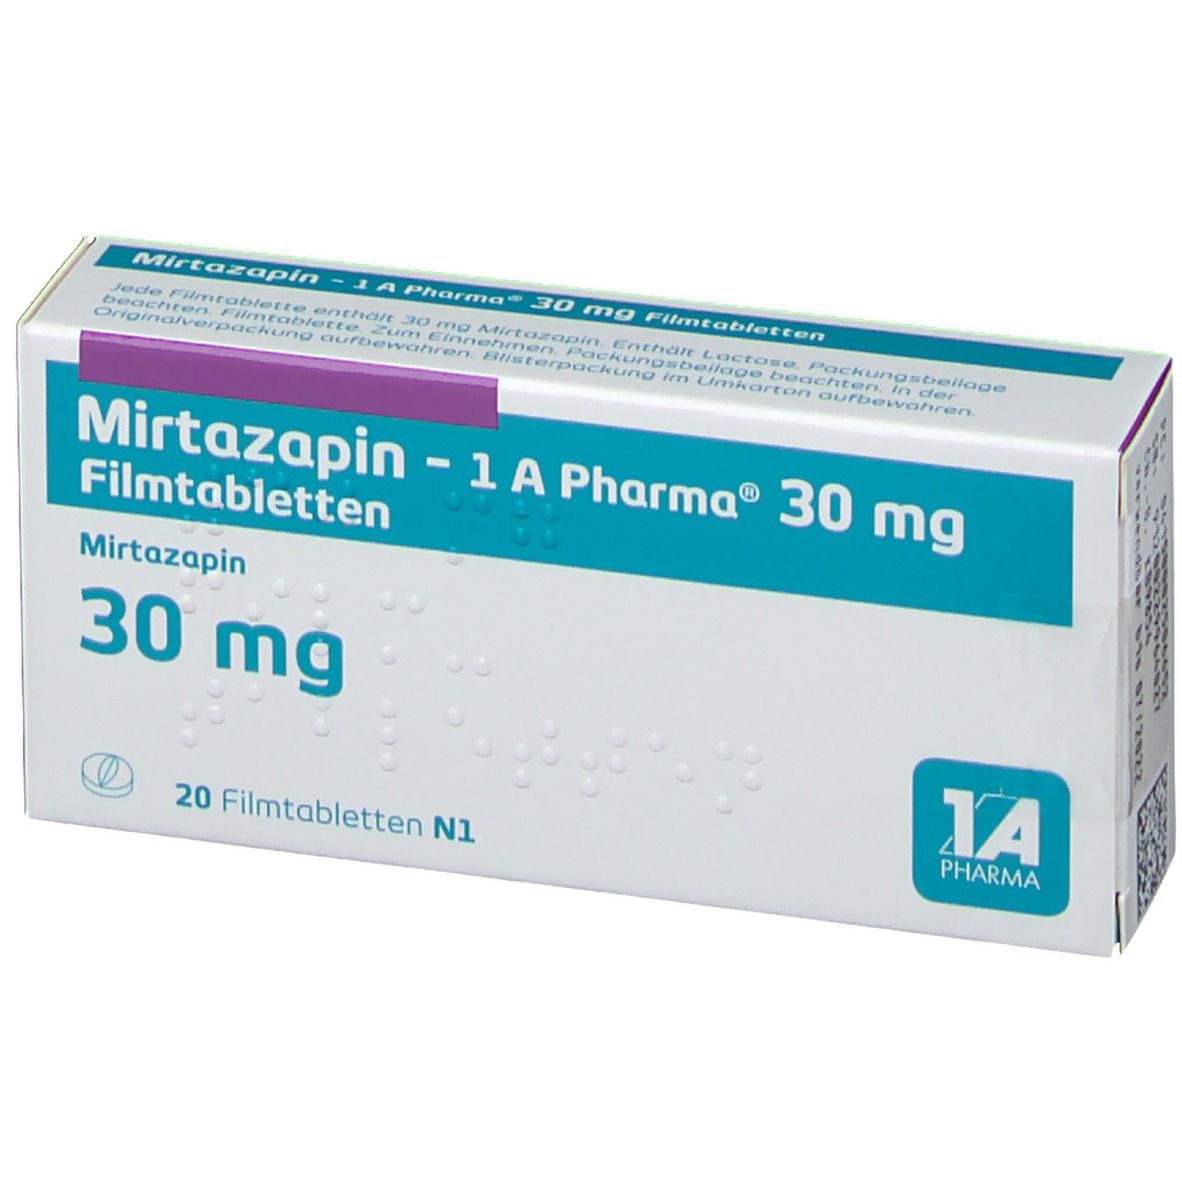 Mirtazapin 1A Pharma® 30Mg